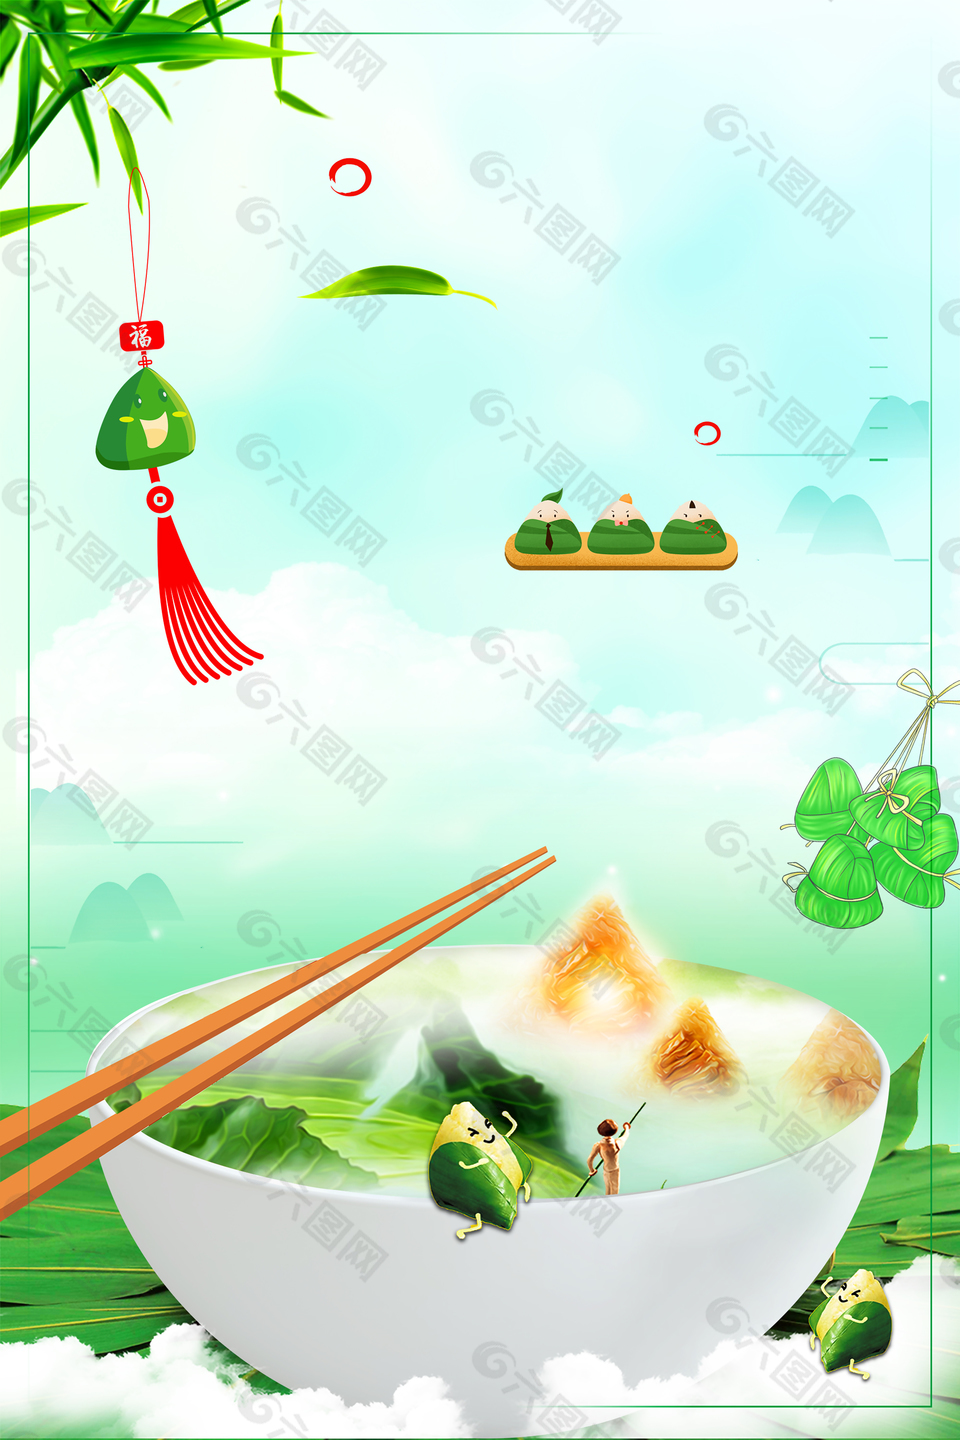 端午节吃粽子赛龙舟美食背景